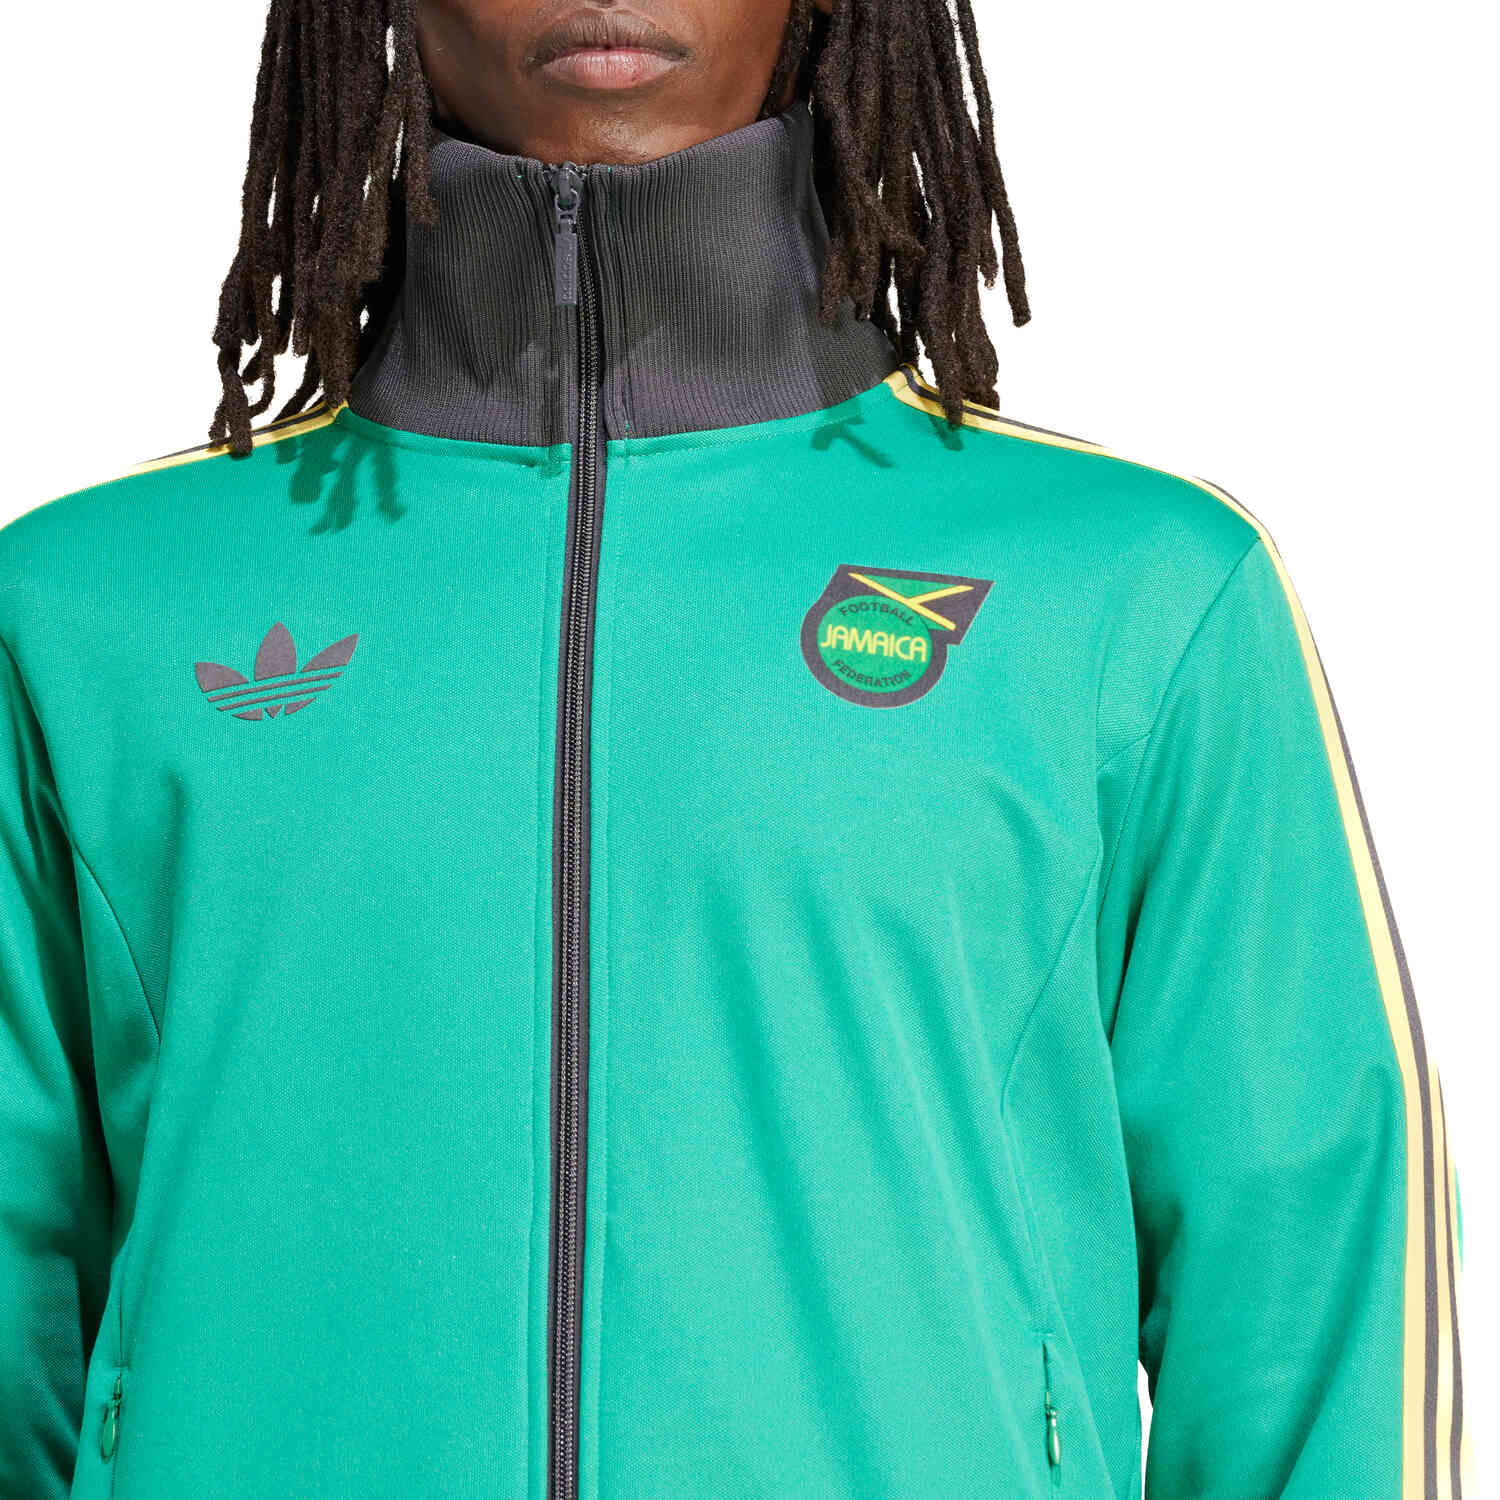 adidas Jamaica Beckenbauer Track top - Court Green - SoccerPro